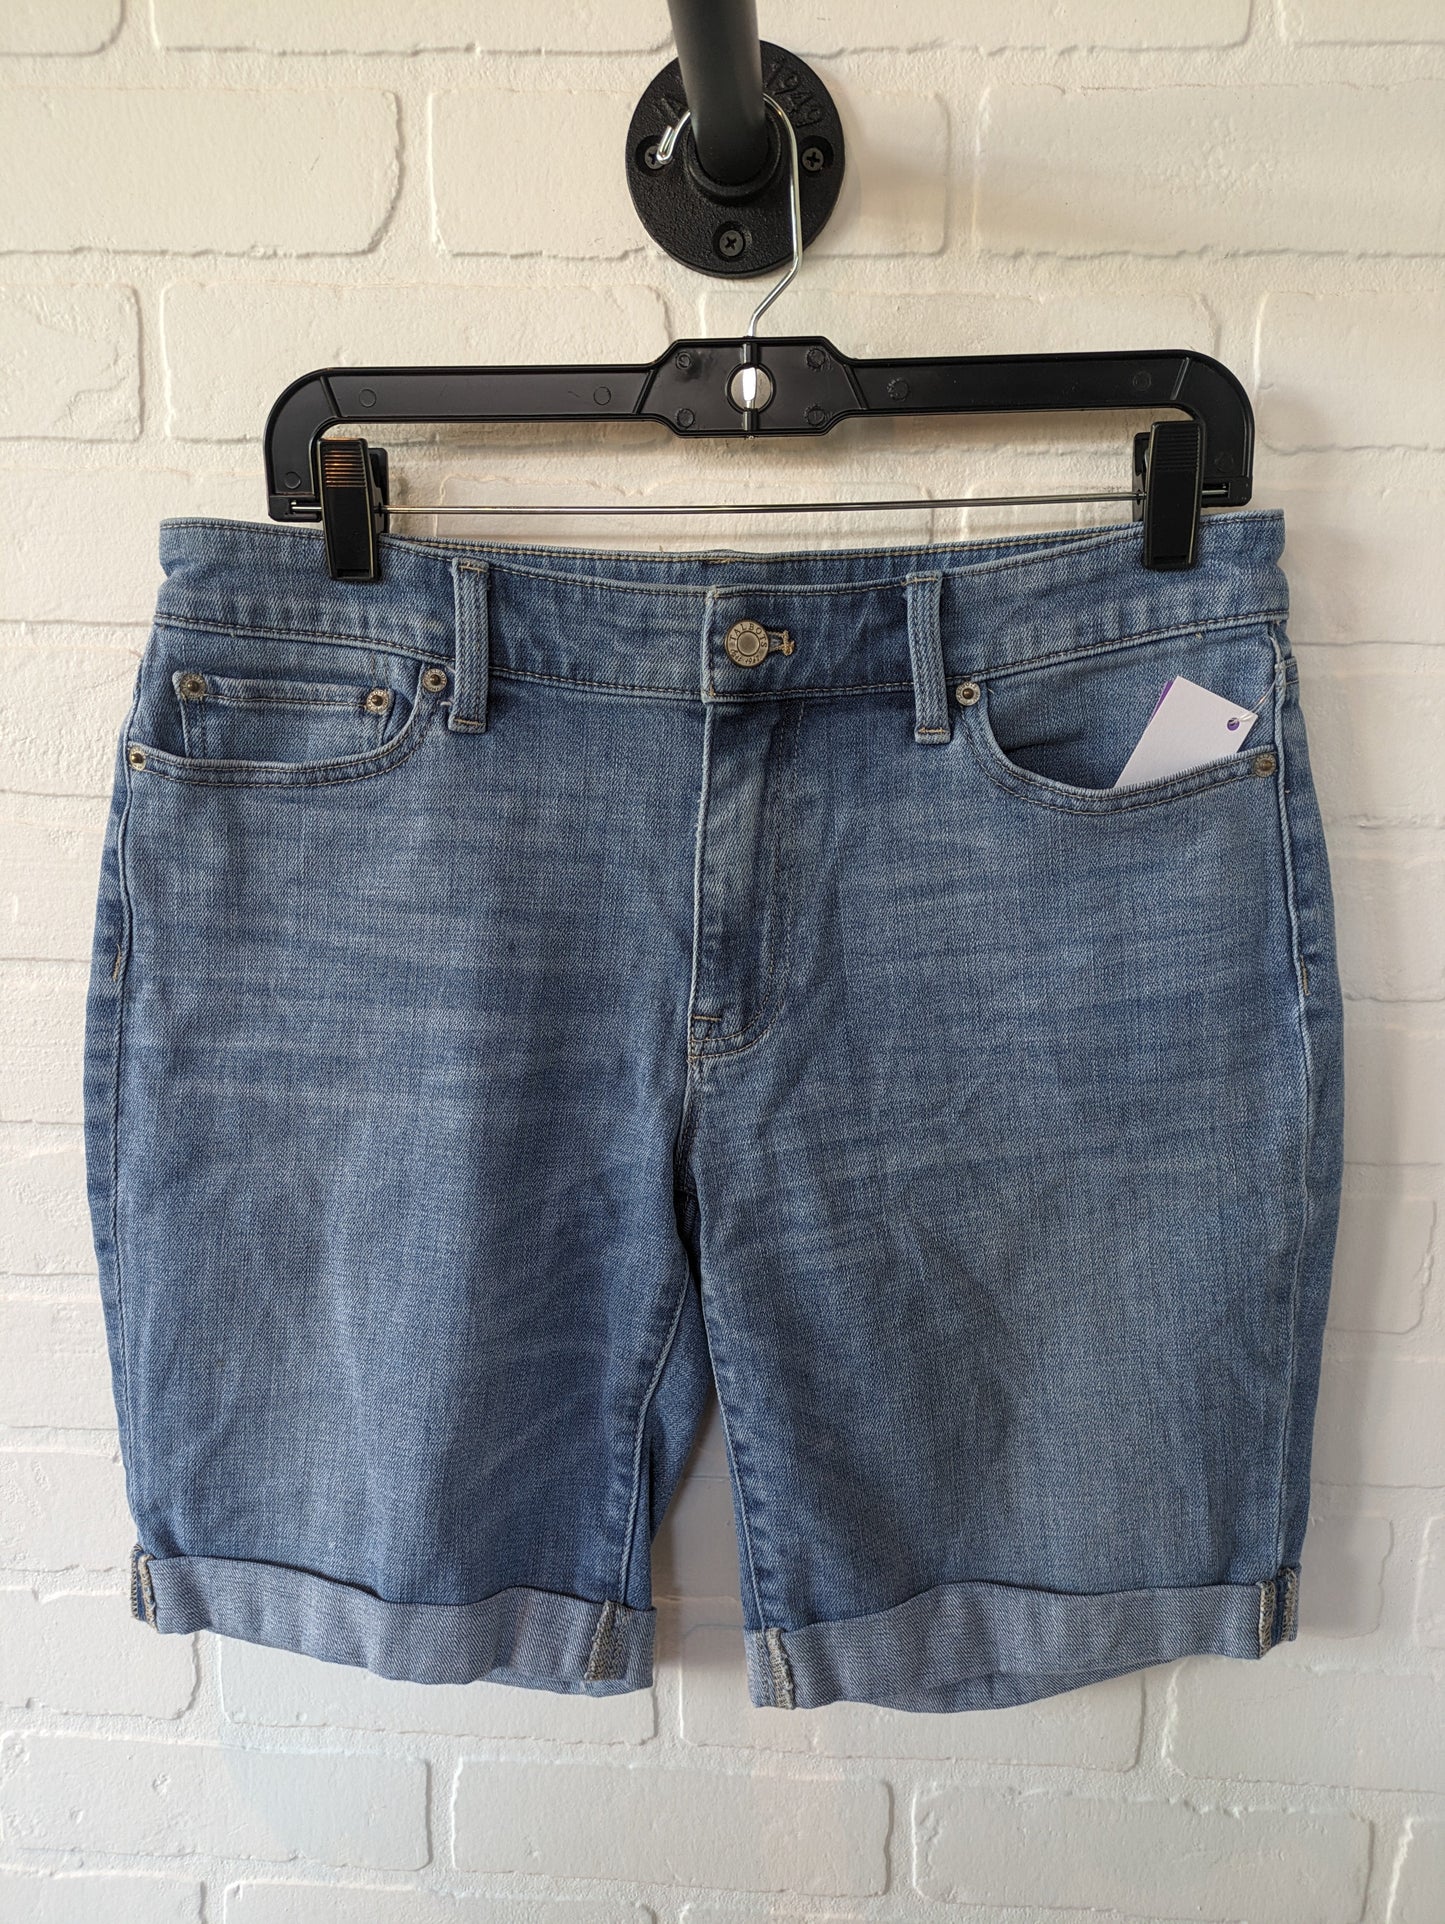 Blue Denim Shorts Talbots, Size 6